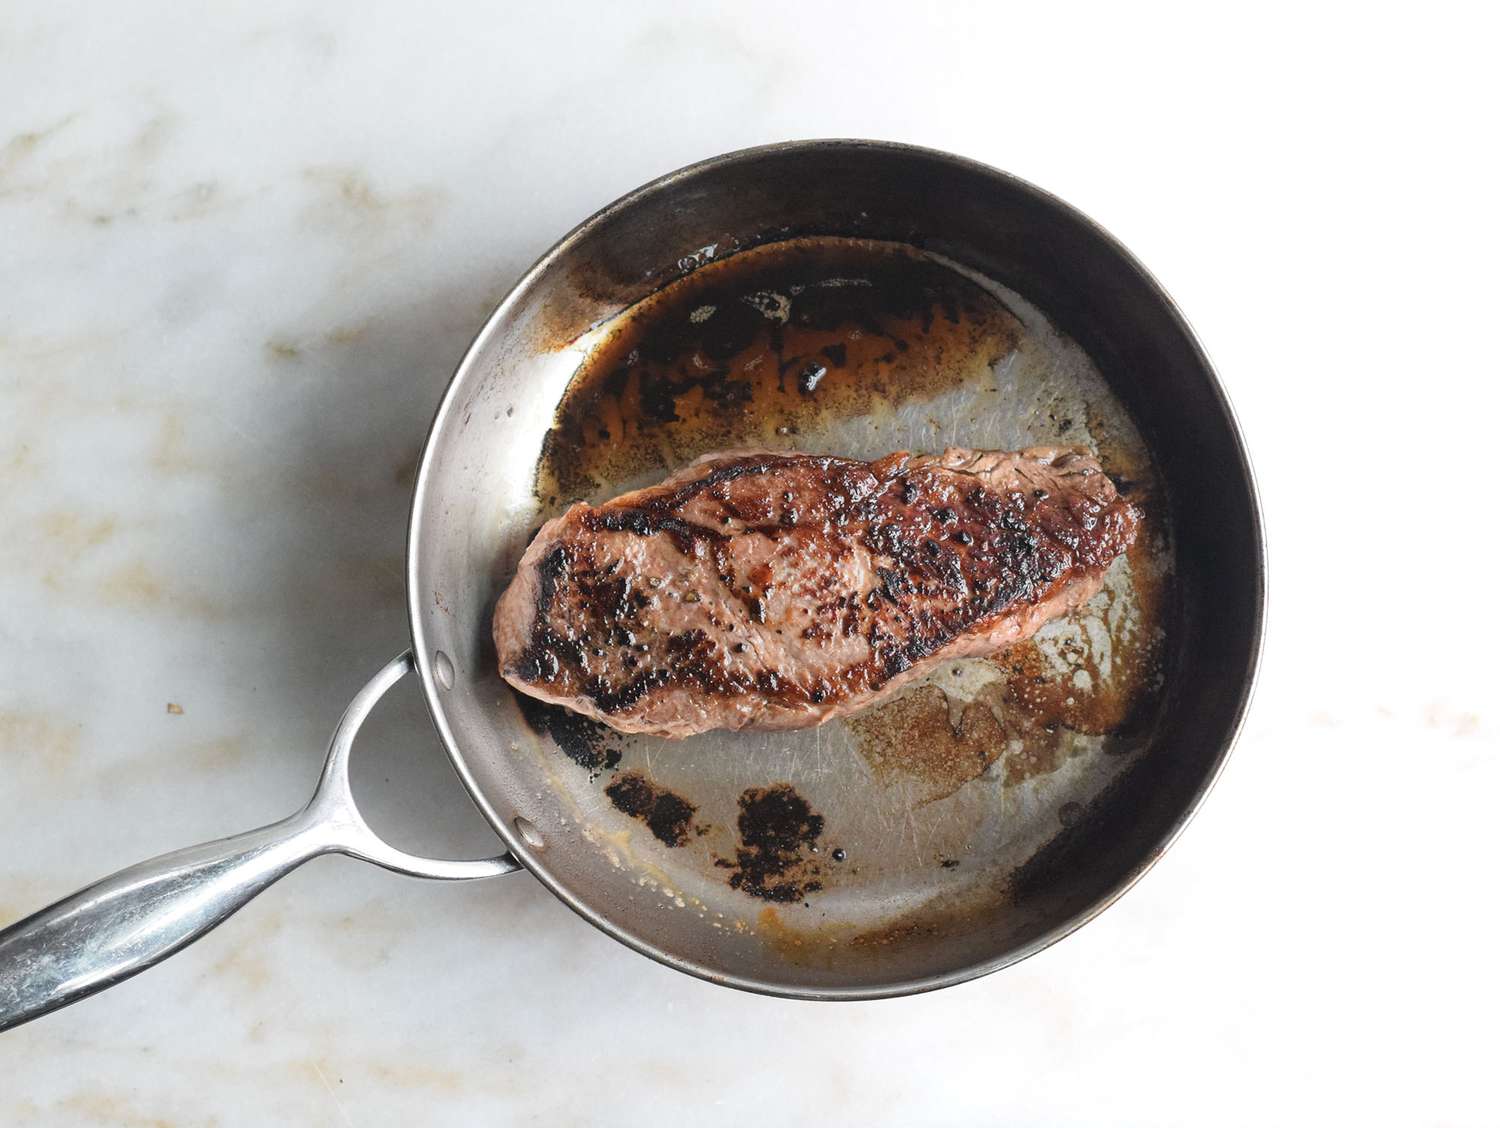 Steak seared in a heavy-bottomed skillet